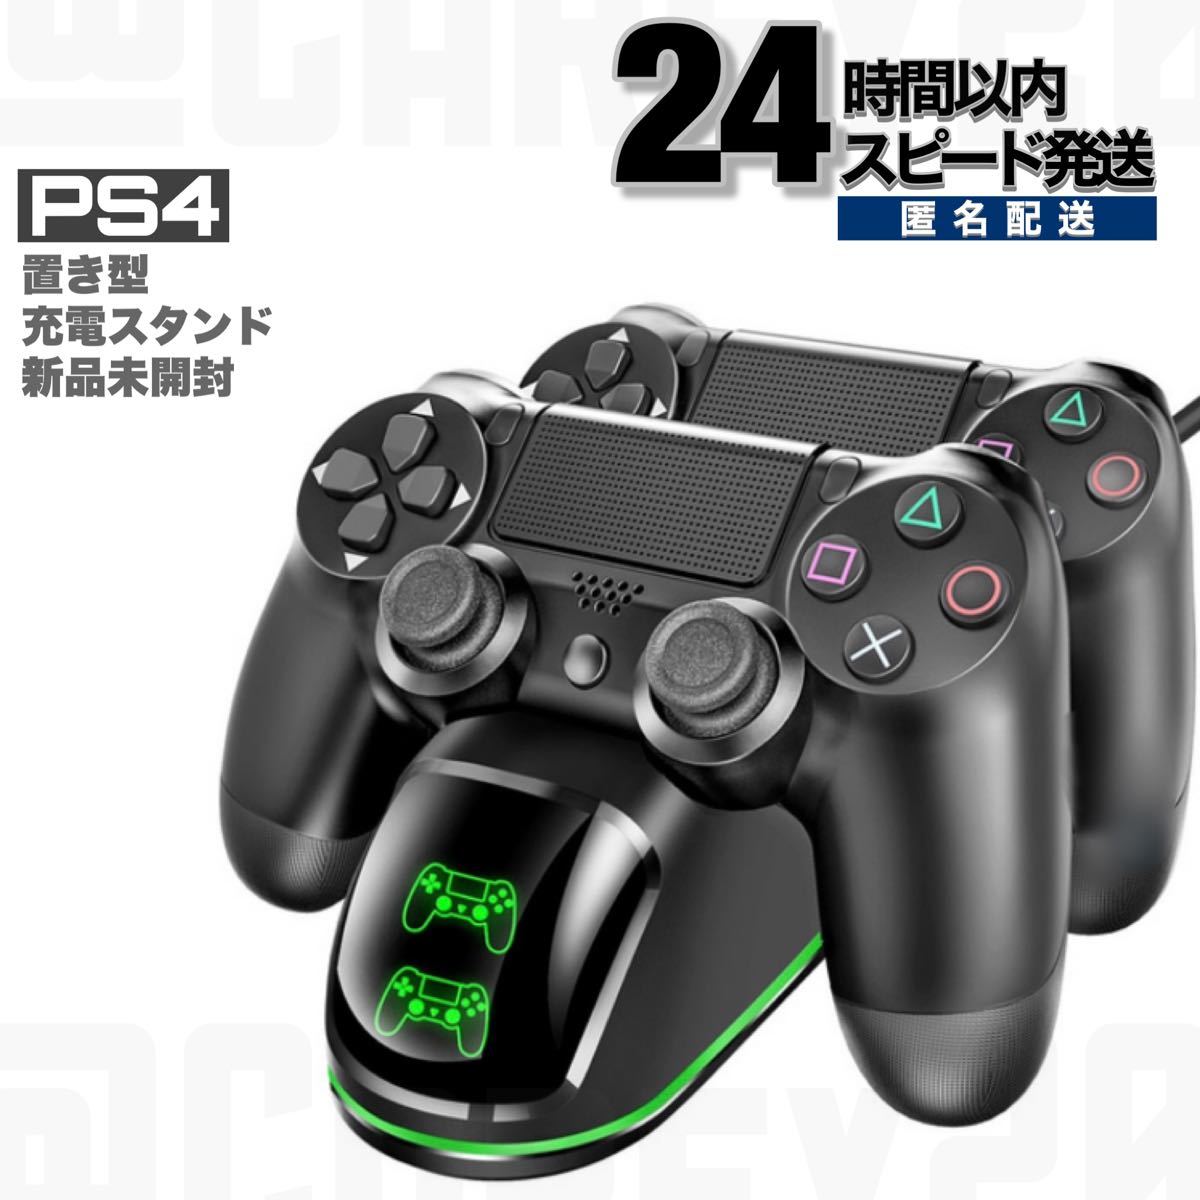 新品未開封 DOBE PS4 コントローラー 置き型 充電スタンド 2台同時充電器 デュアルチャージャー PlayStation4